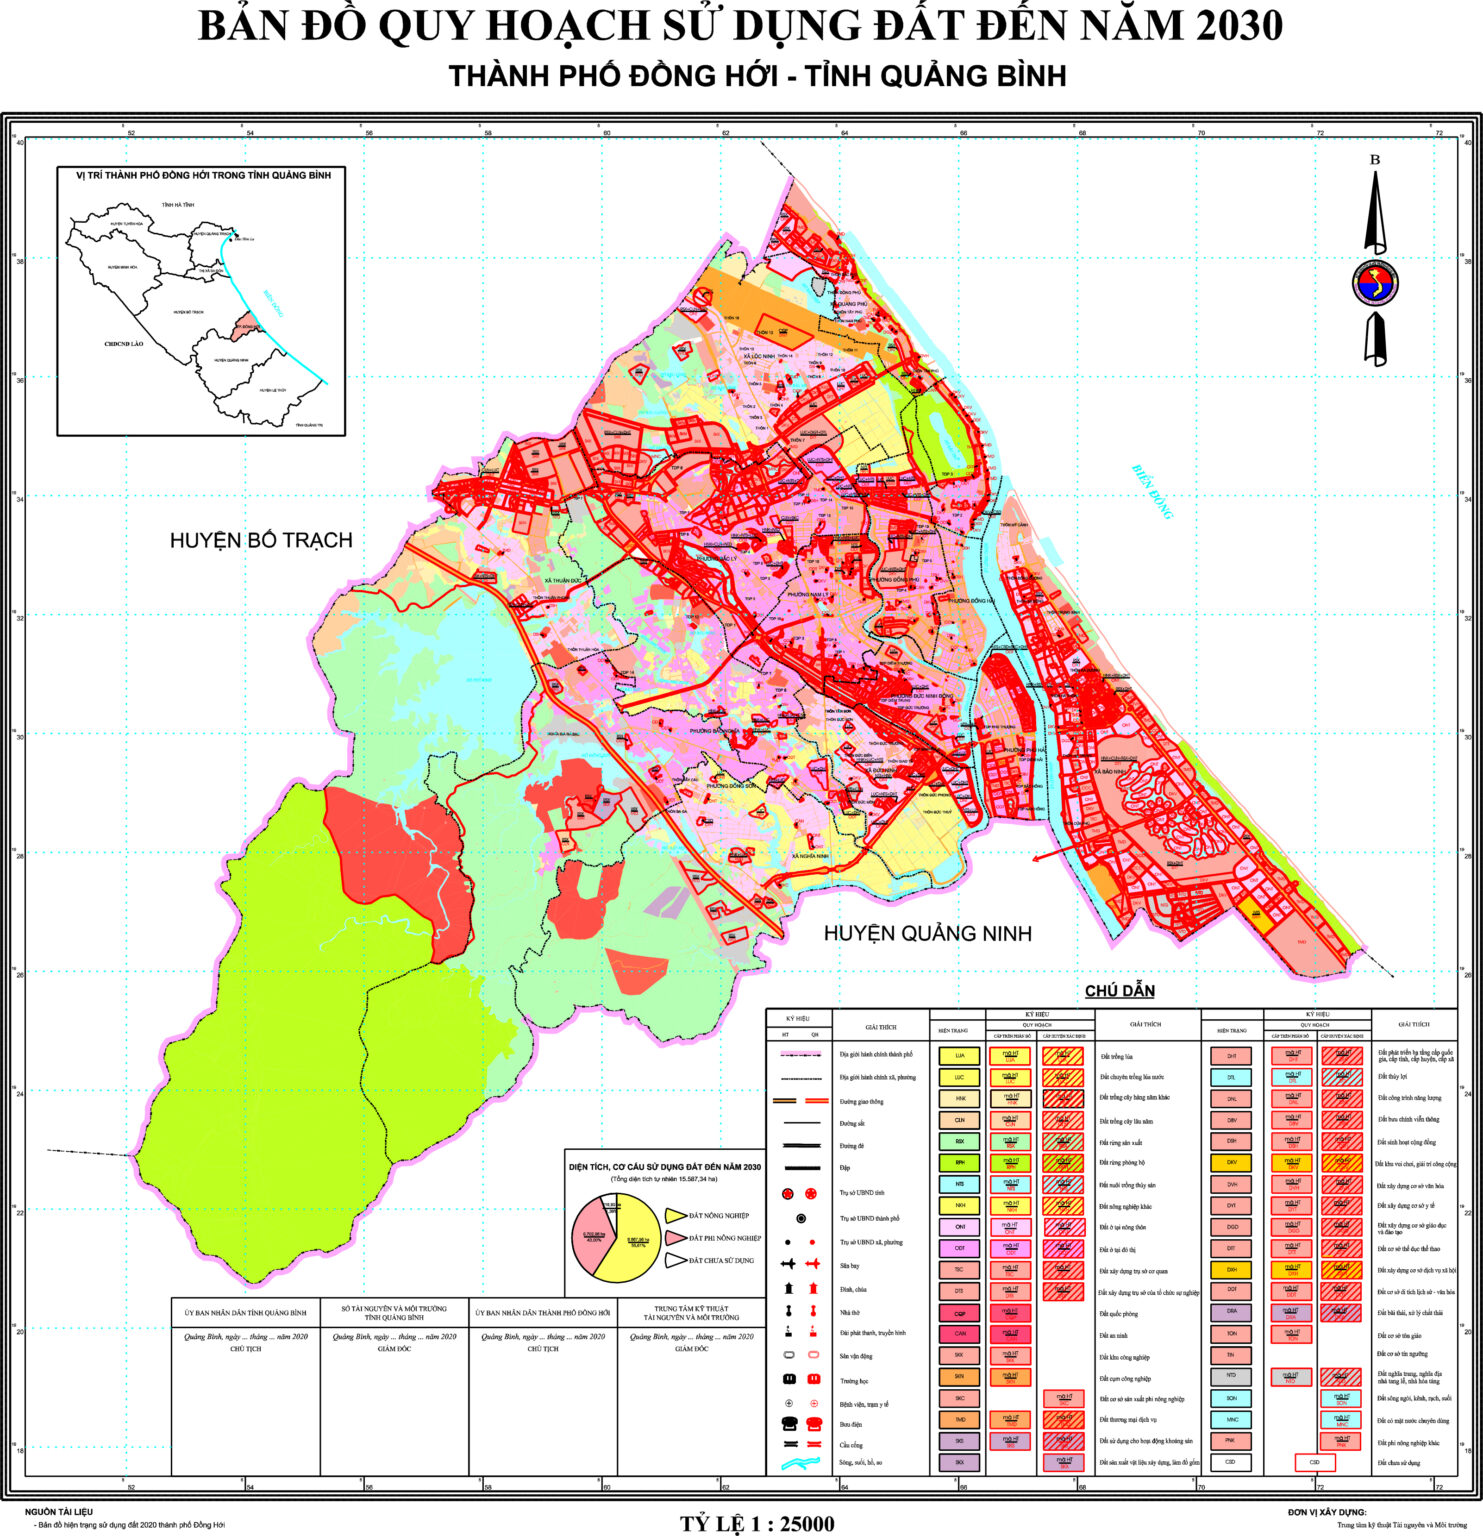 Bản đồ quy hoạch sử dụng đất thành phố Đồng Hới đến 2030